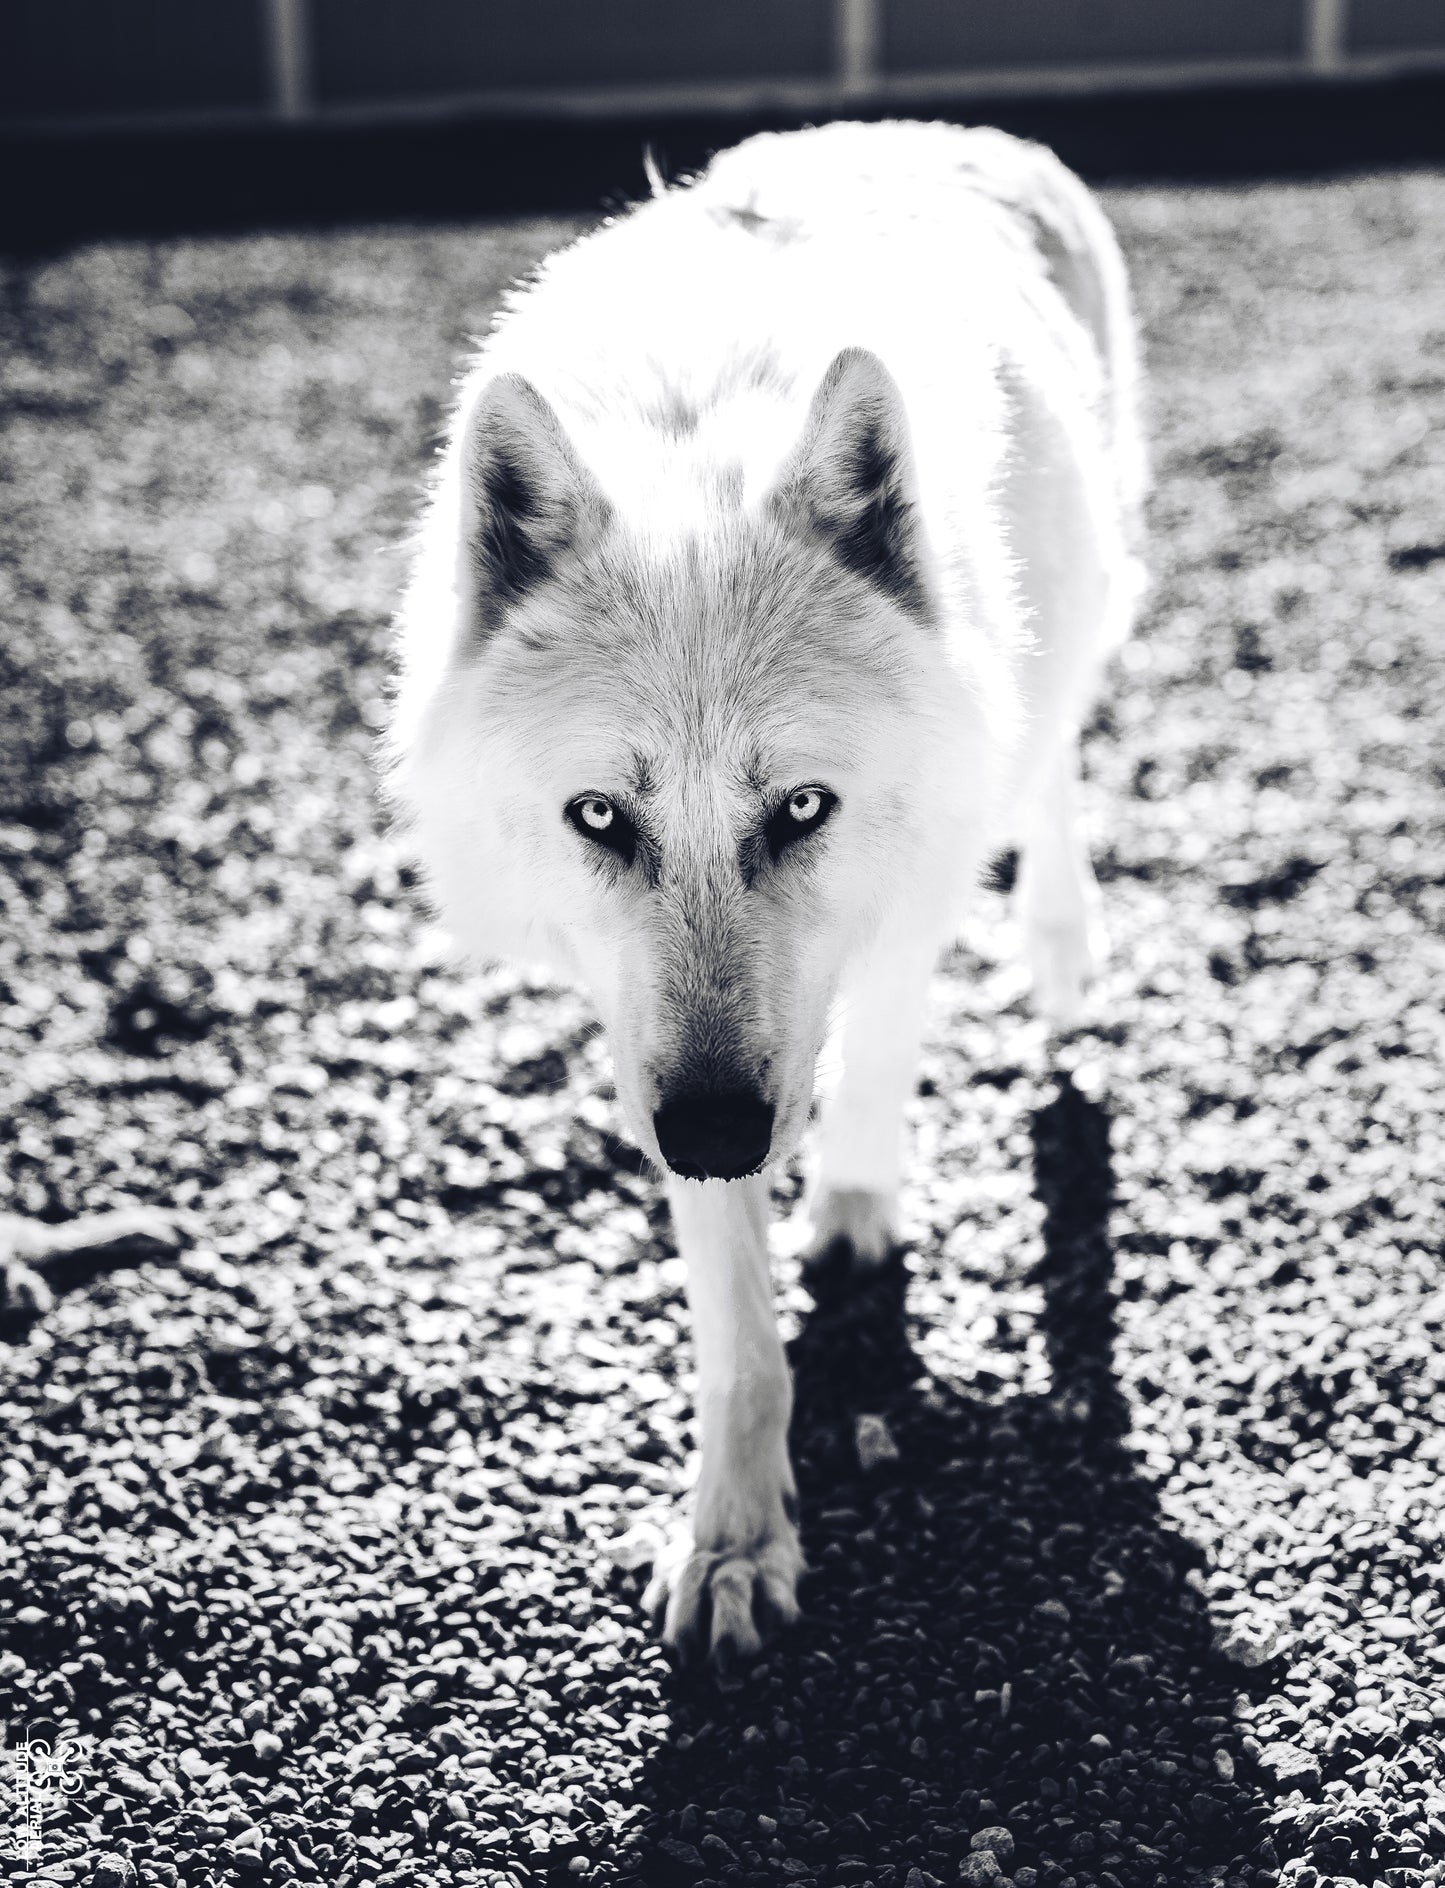 Wolf 02